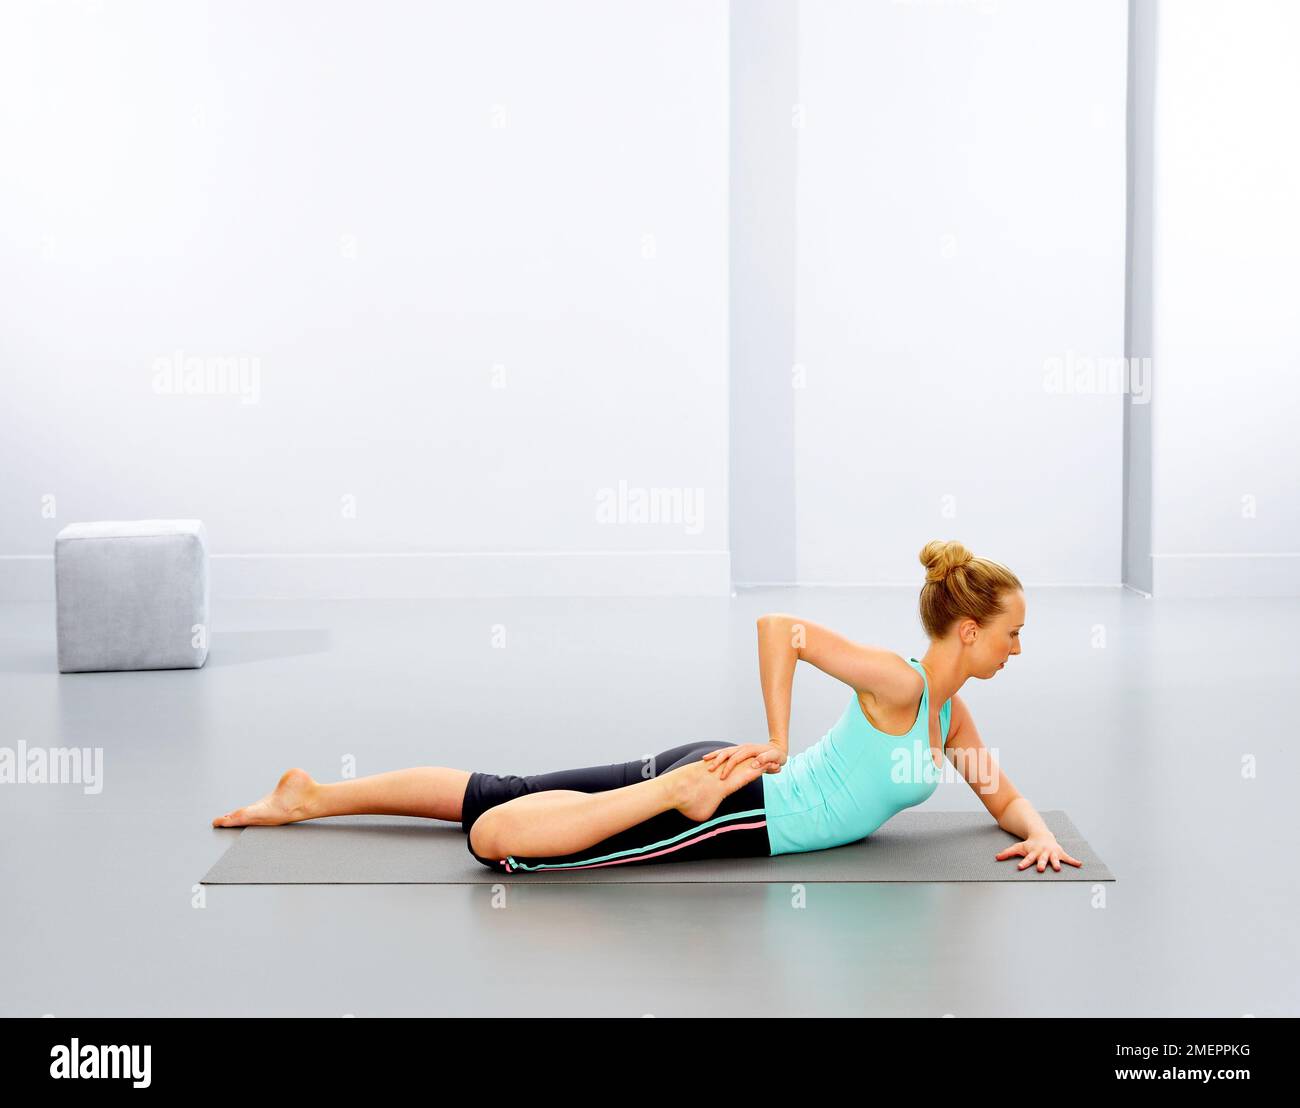 Frau, die Yoga-Übung auf der Matte macht, Seitenansicht Stockfoto